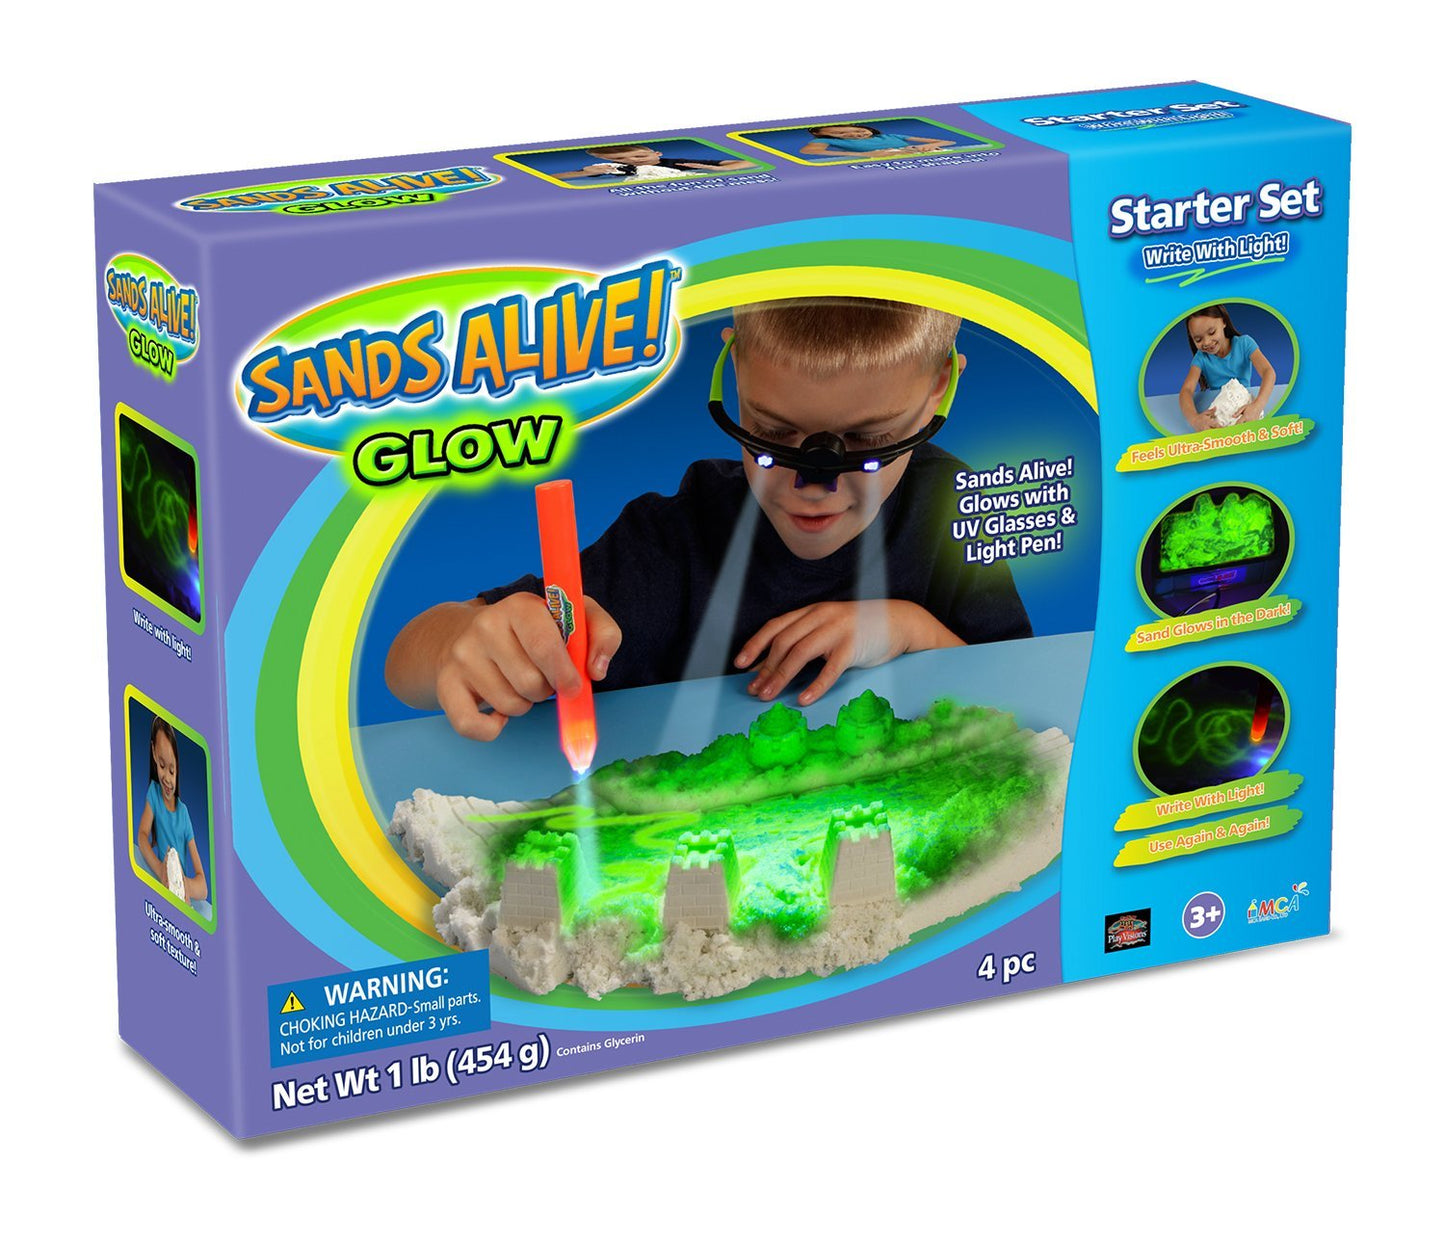 Sands Alive! Glow Starter Kit